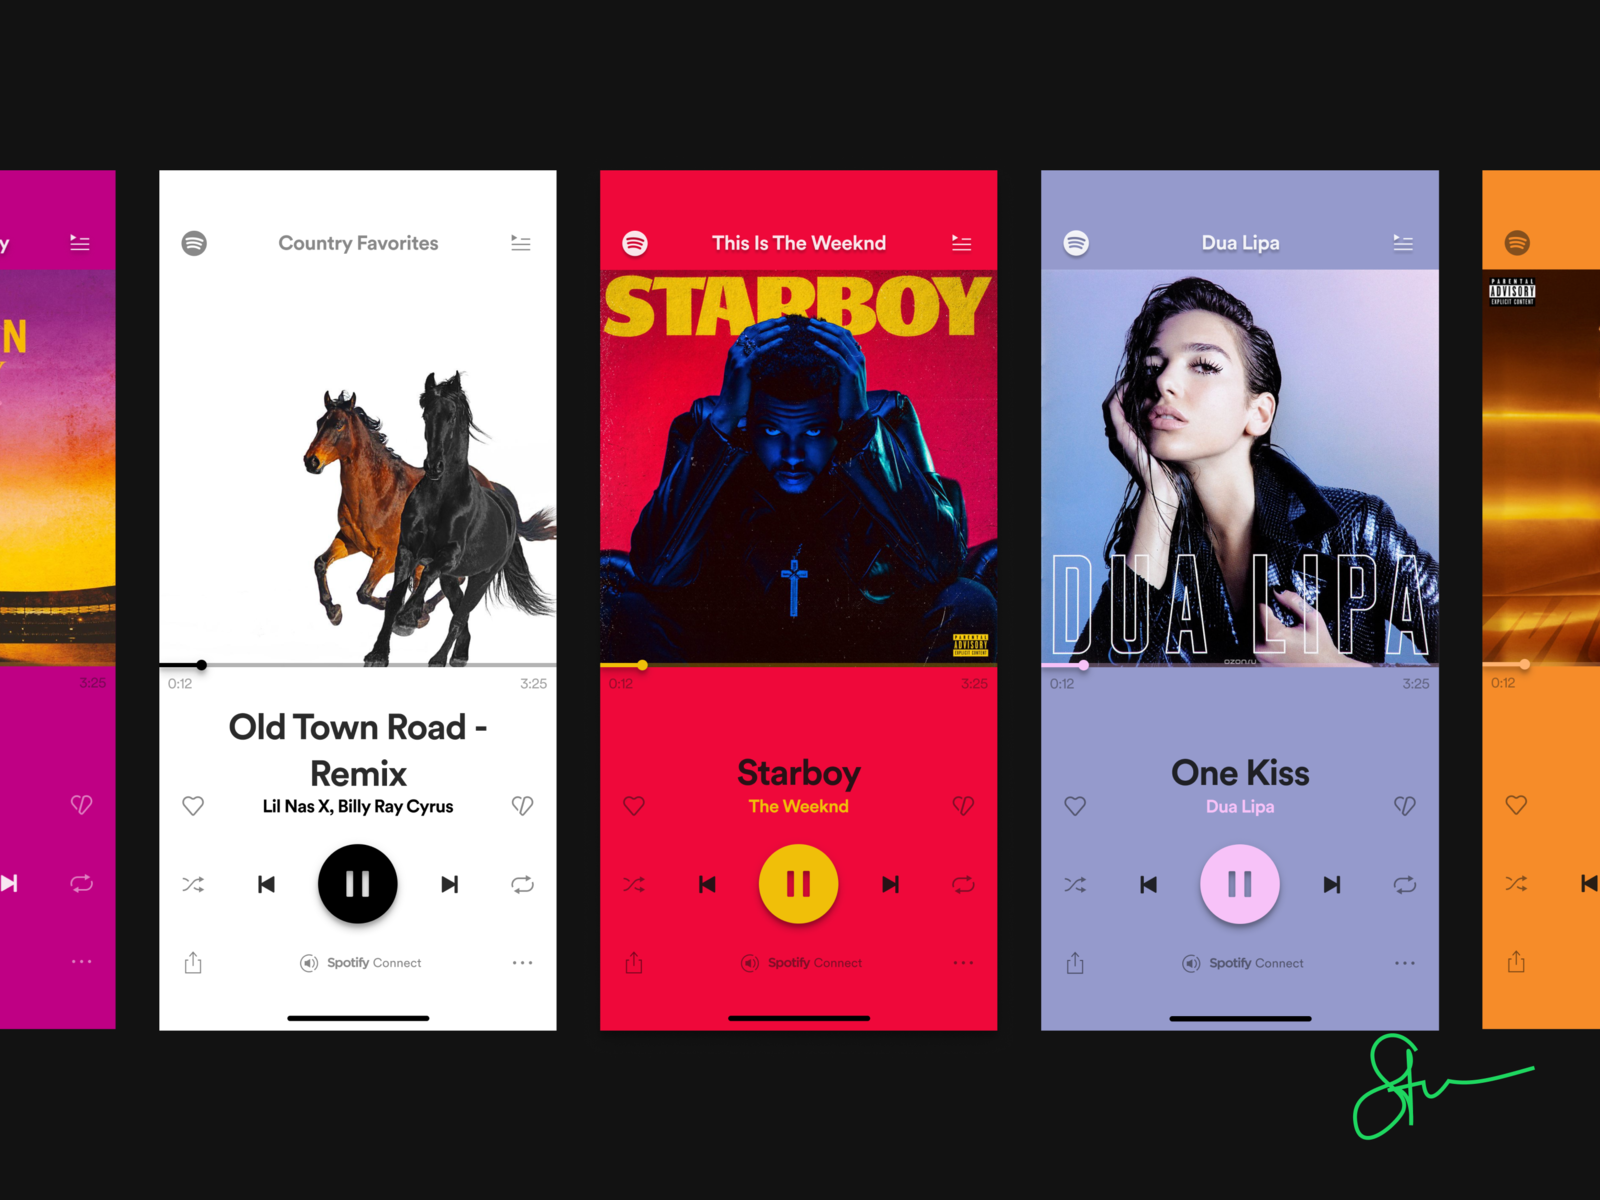 Spotify 1.2.13.661 free instal